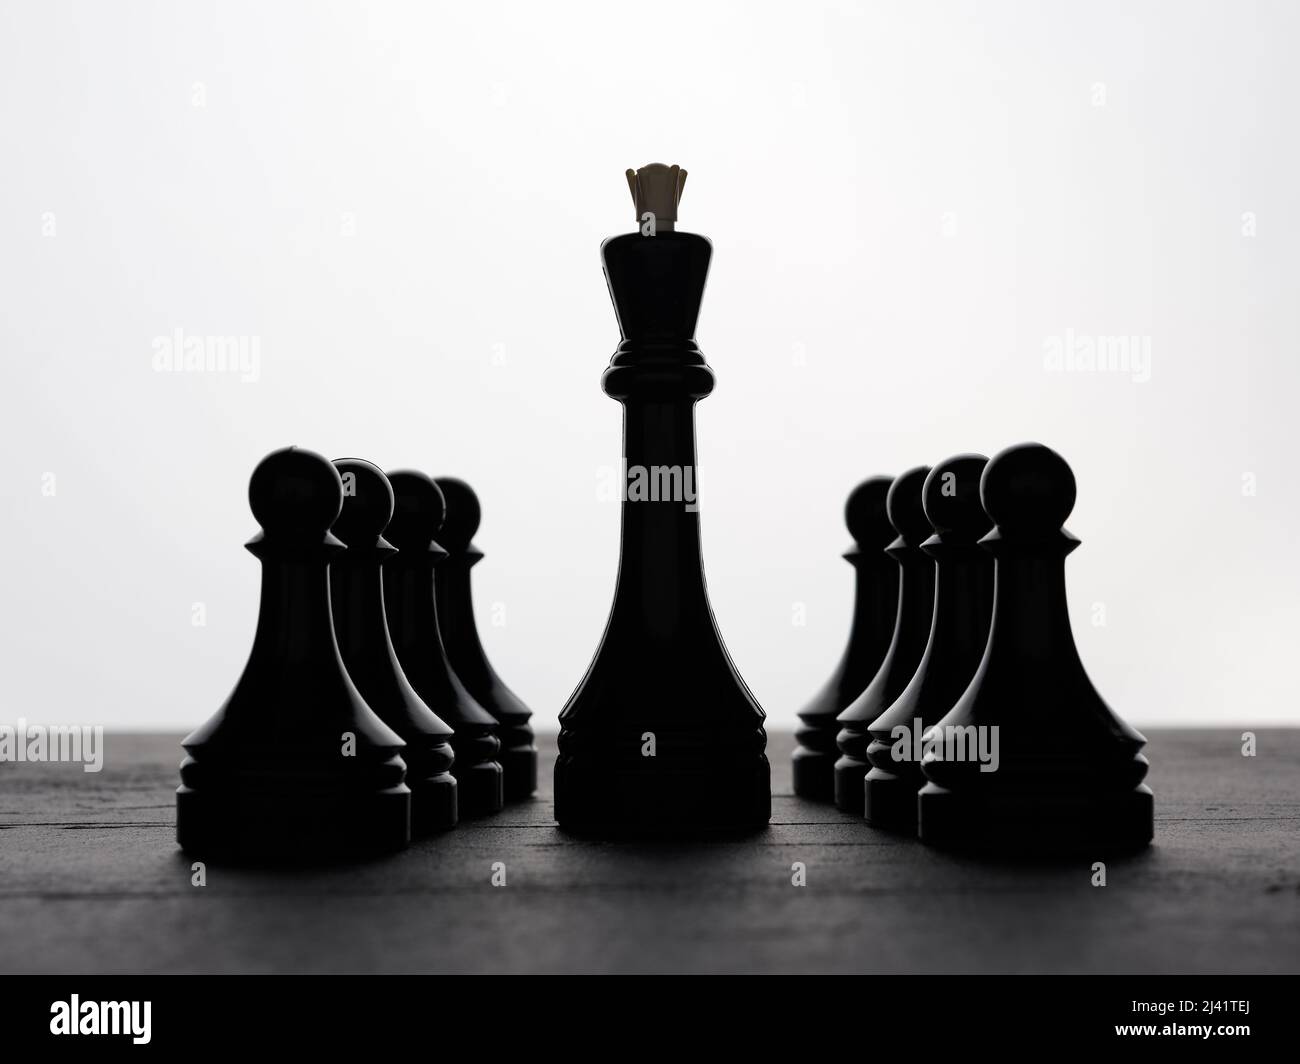 Schwarzer Schachkönig, der durch die Bauern läuft, reiht sich in einer Reihe an. Konzepte für strategische Führung, Macht, Autorität oder Führungskräfte. Stockfoto